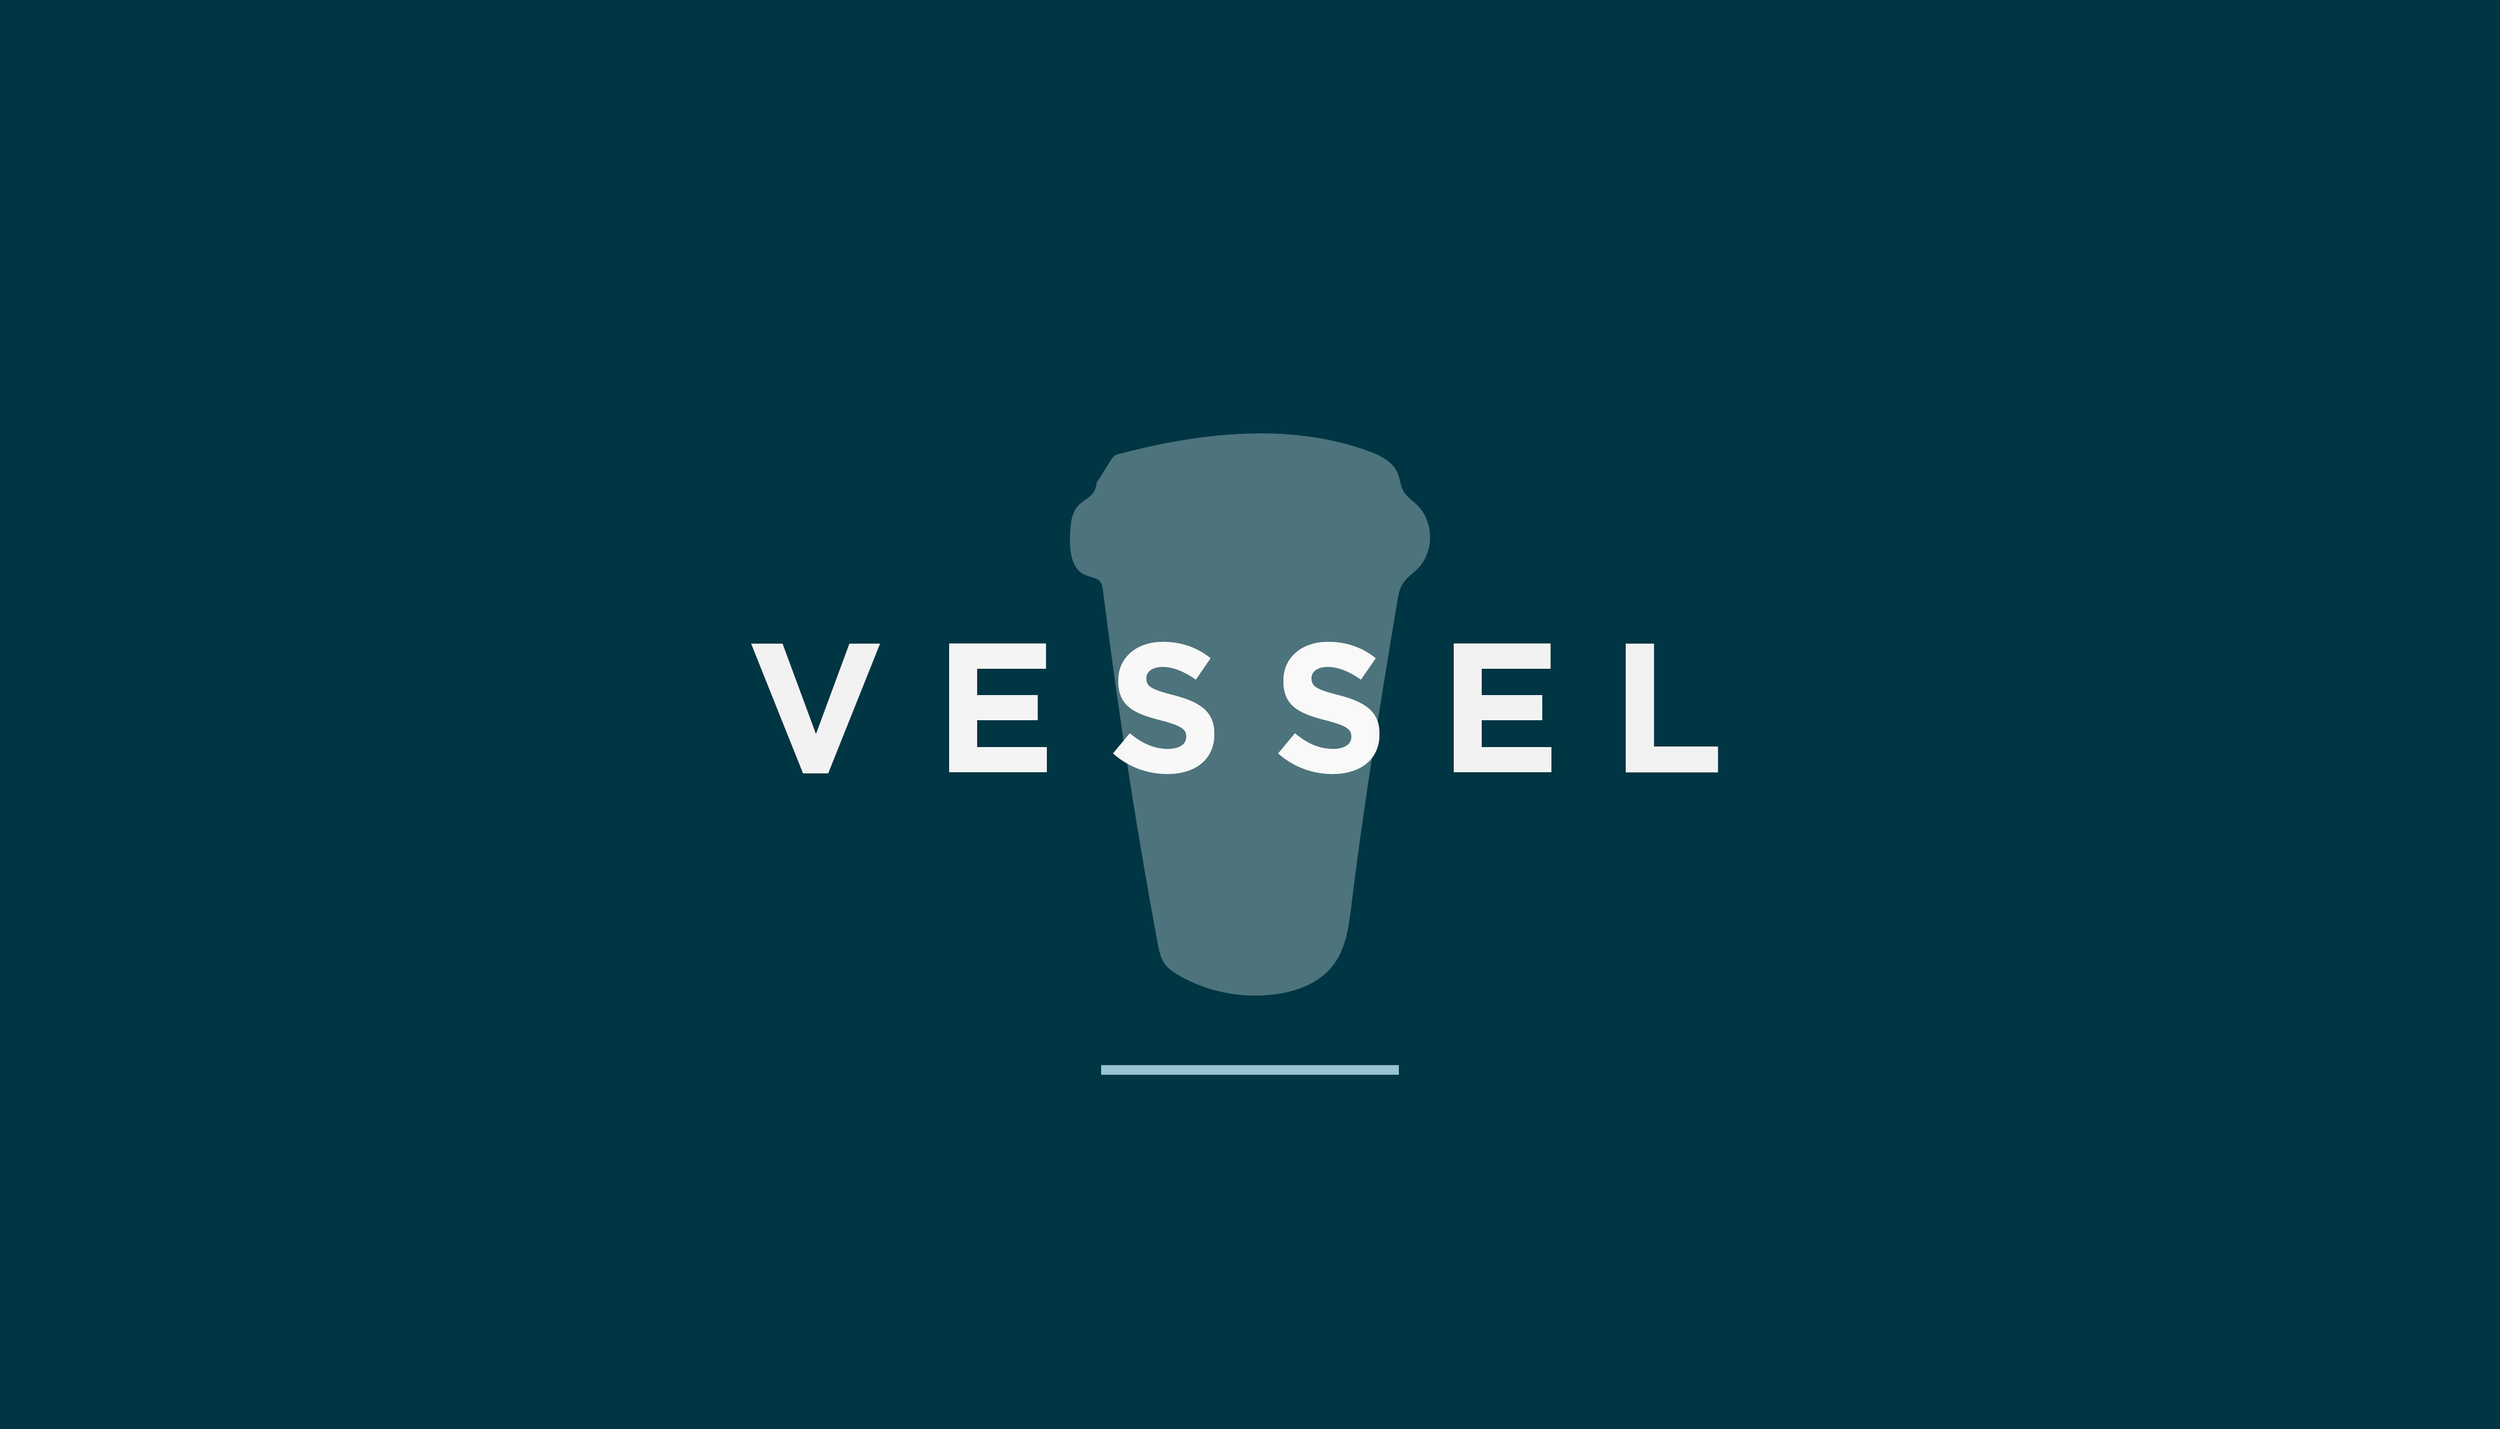 Vessel Web Images.jpg